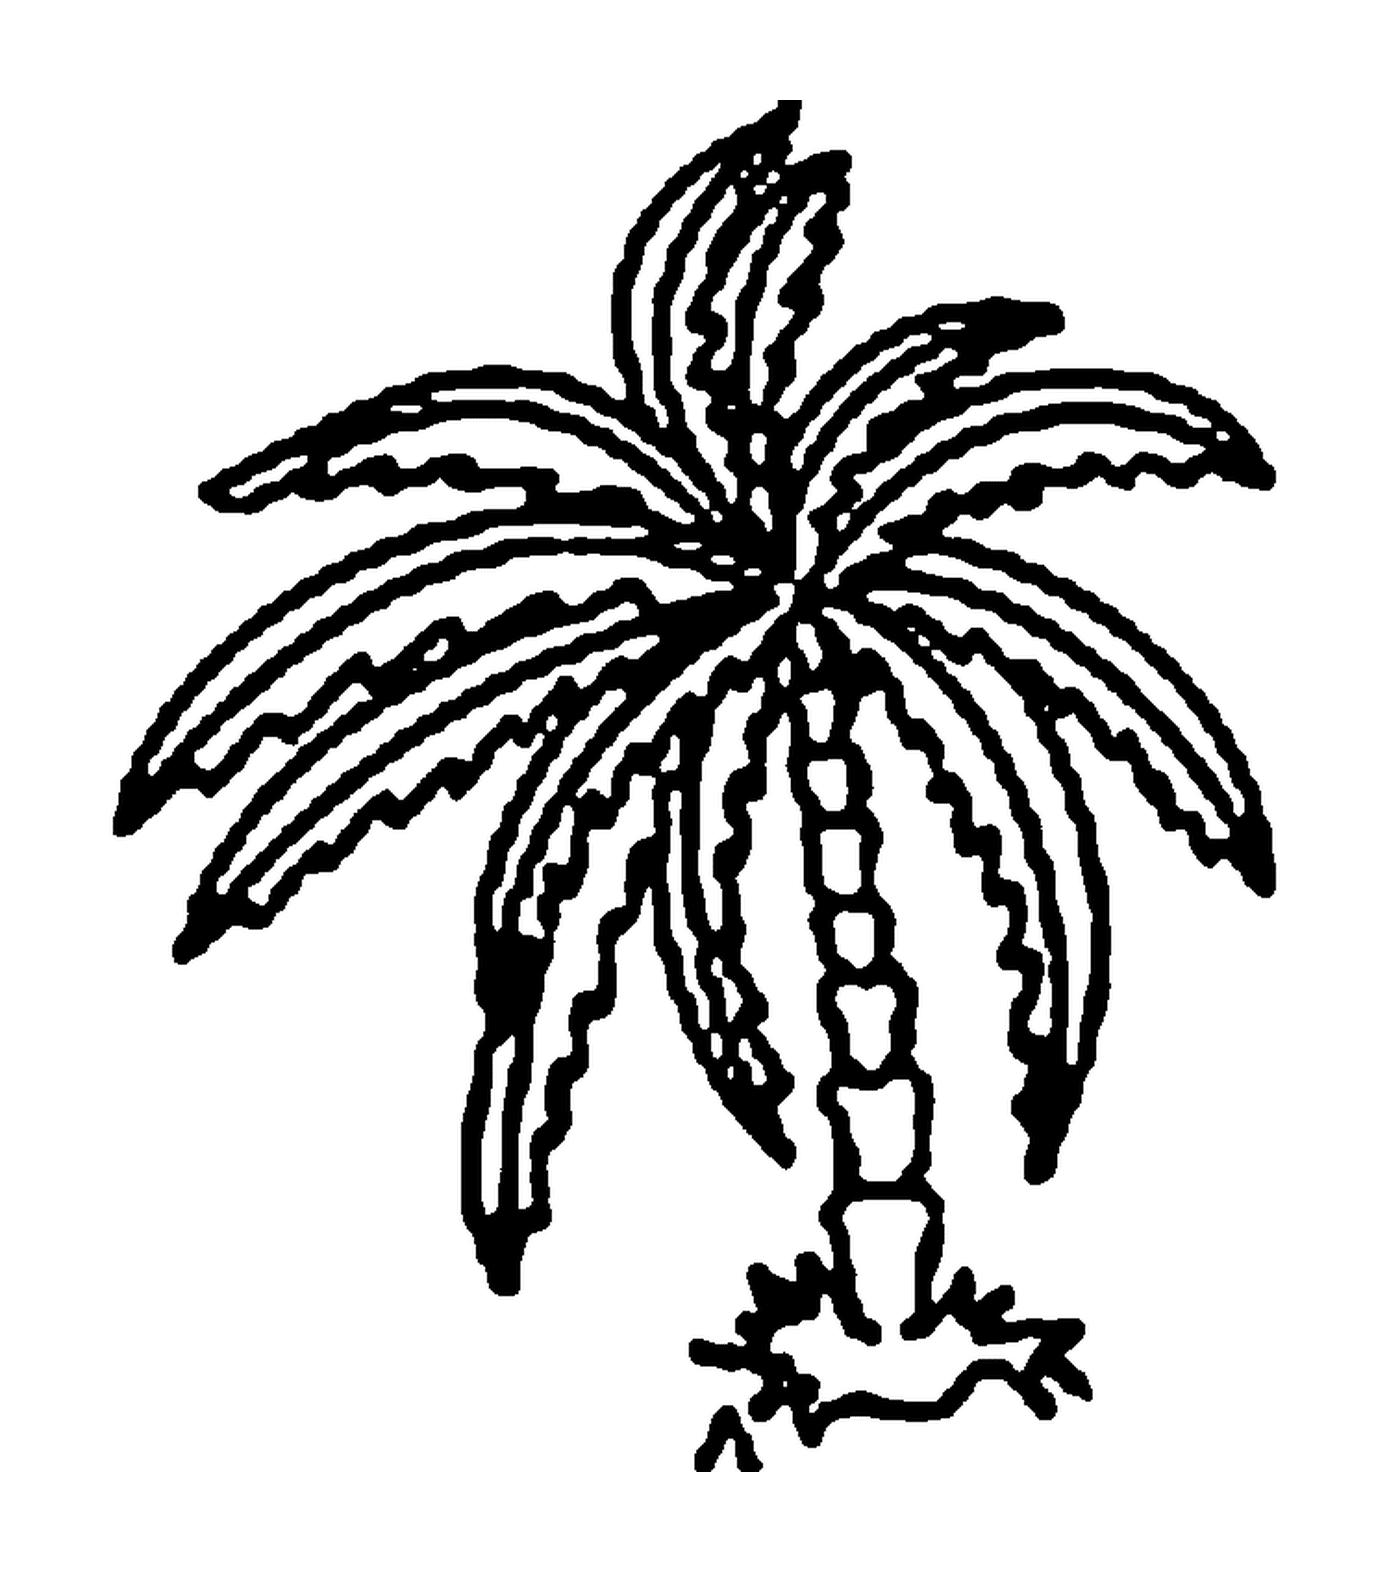   Un palmier 